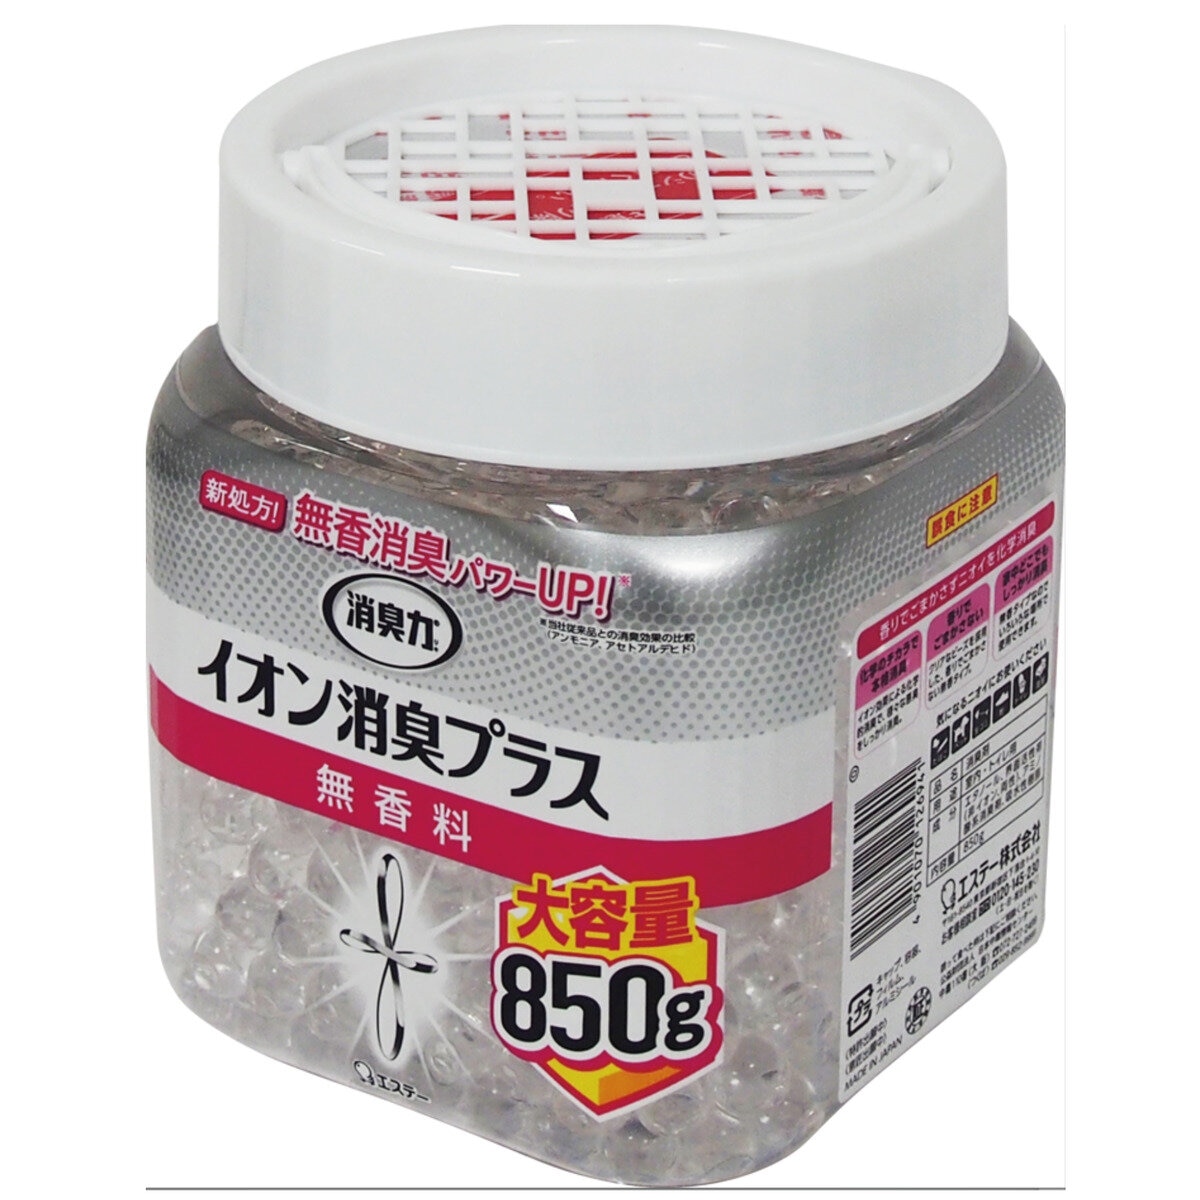 消臭力 イオン消臭プラス 大容量 本体 850g | Costco Japan